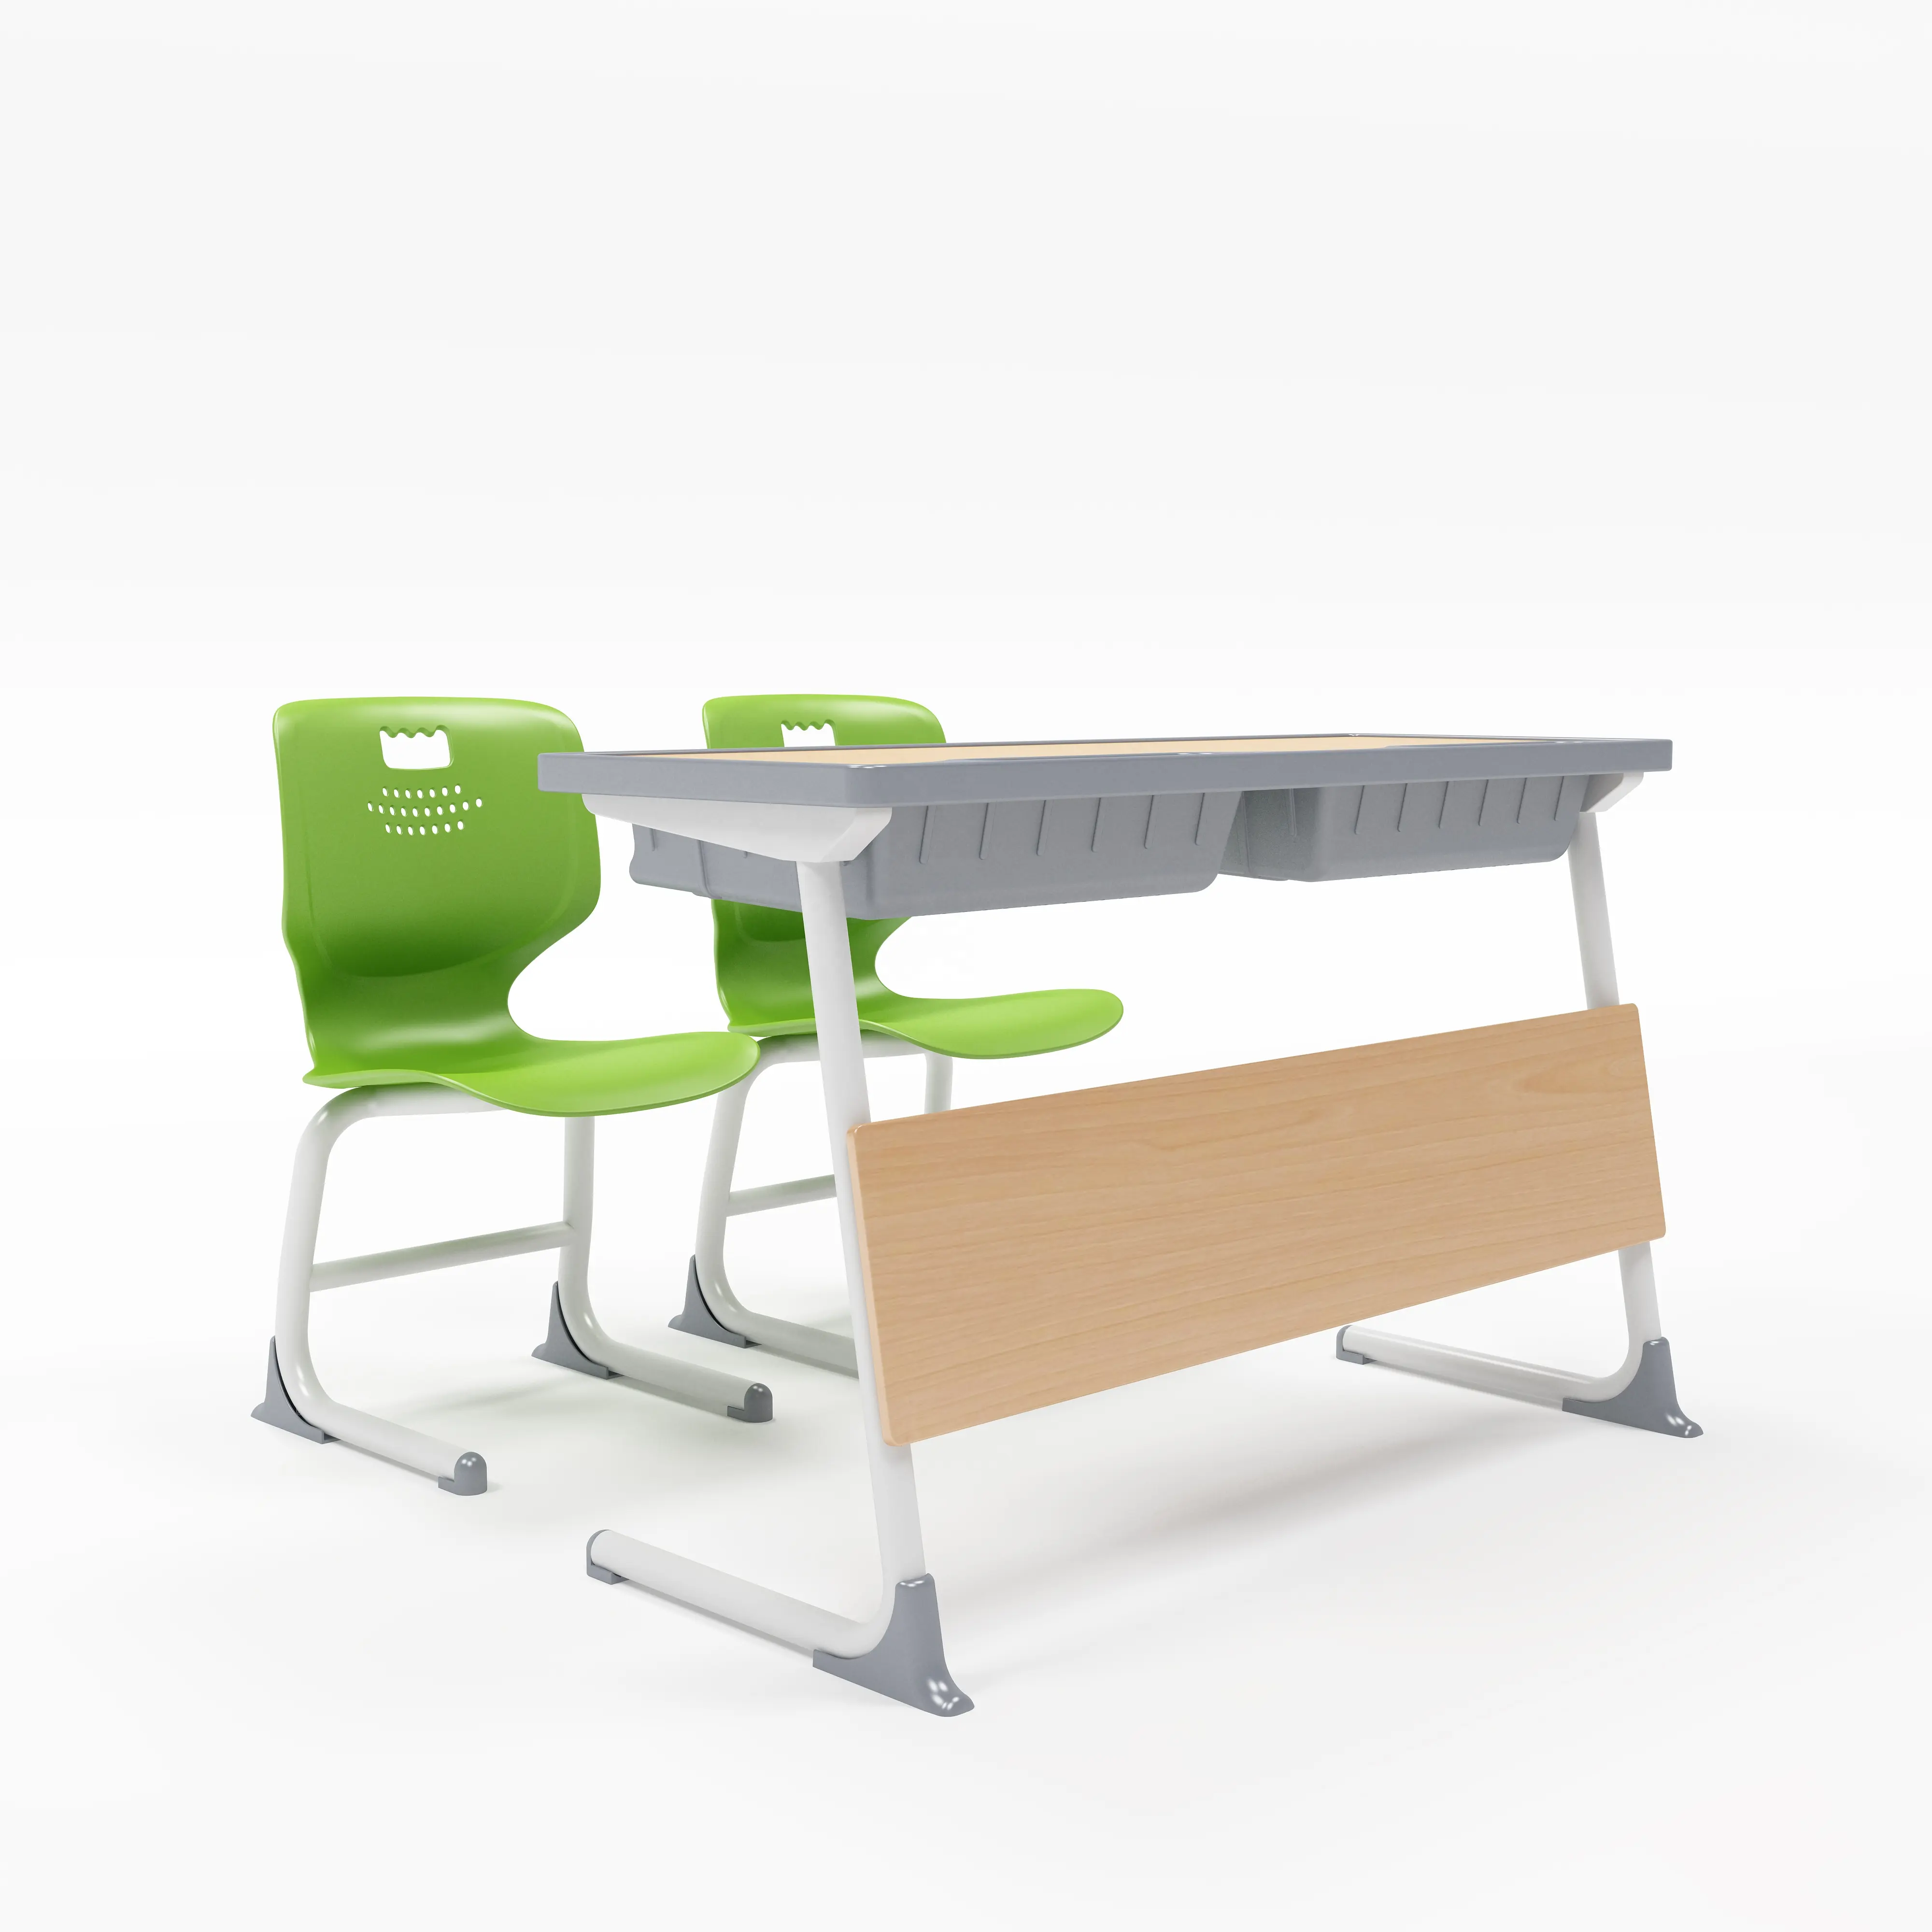 Ilkokul sınıf öğrenci masaları çift koltuklu masaları ve okul sınıf sandalyeler sandalyeler öğrenme okul masaları